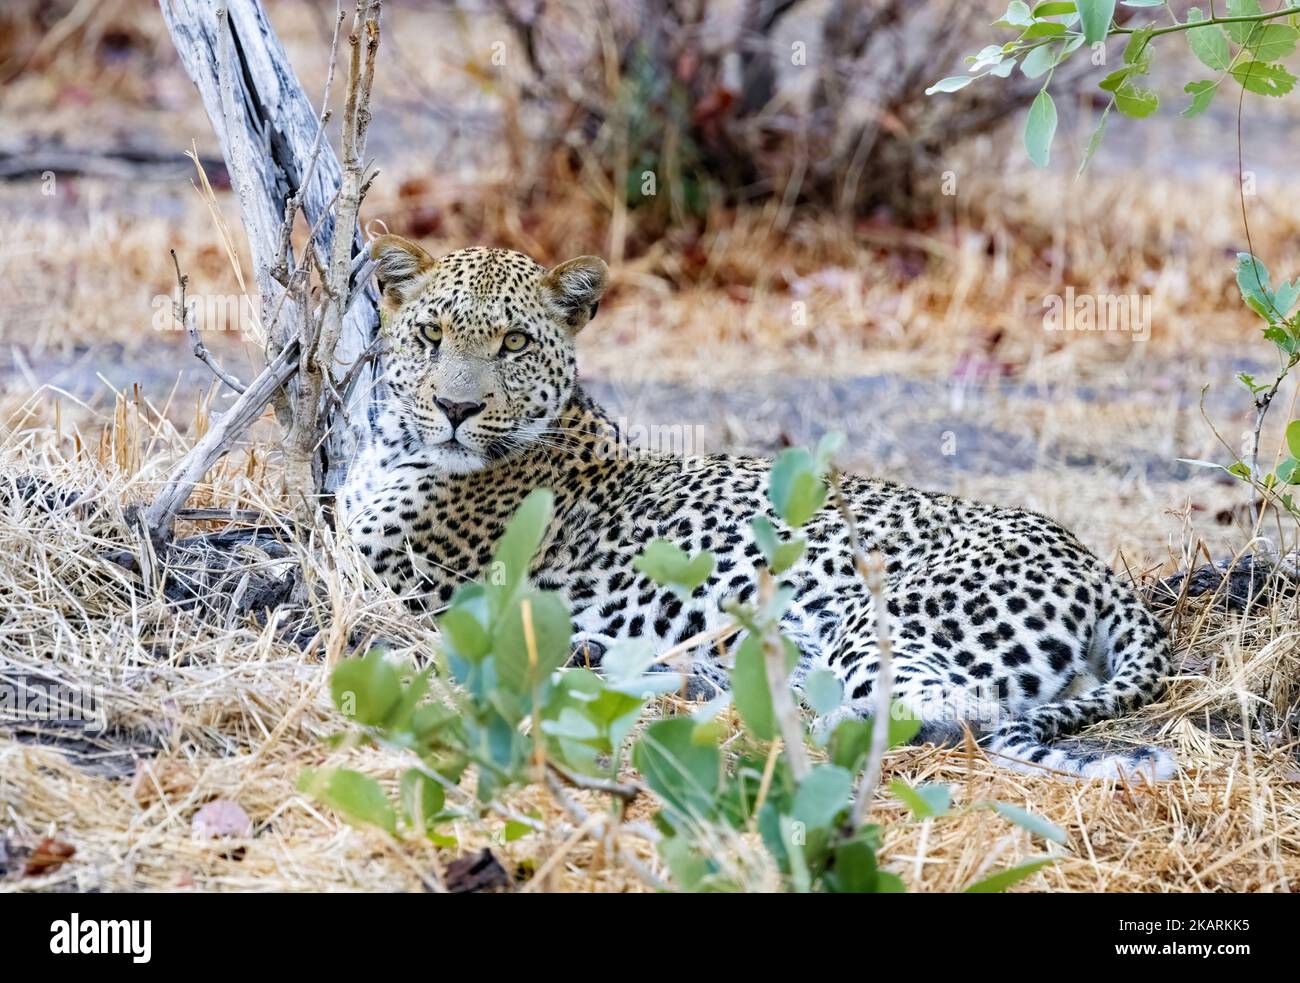 leoparden in Afrika; ein erwachsener männlicher Leopard, Panthera Pardus, liegt im Okavango-Delta, Botsuana Africa. Große Katze. Stockfoto